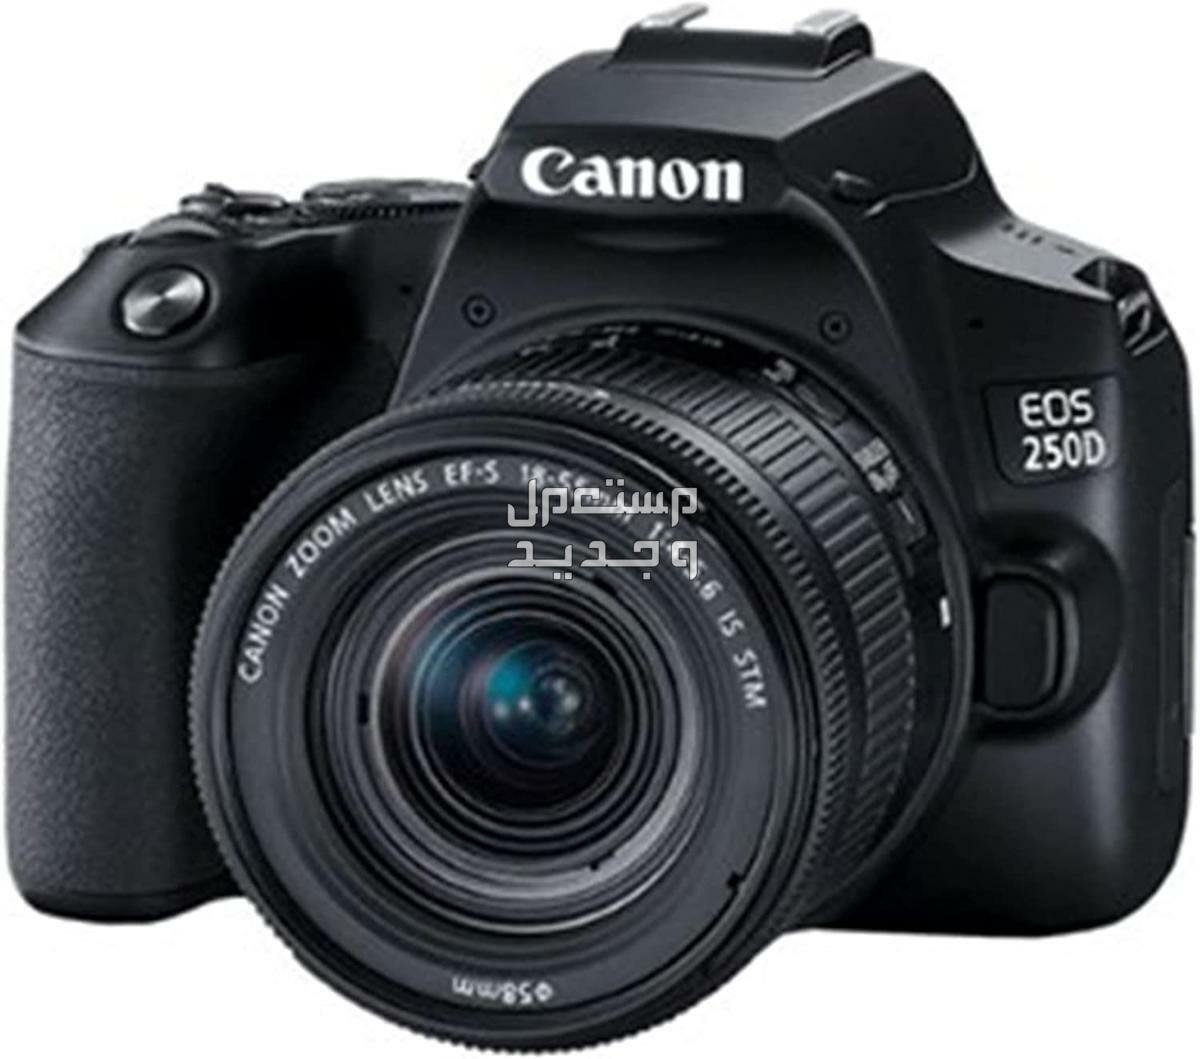 سعر ومميزات ومواصفات أرخص 5 كاميرات تصوير من كانون في قطر كاميرا Canon EOS 250D